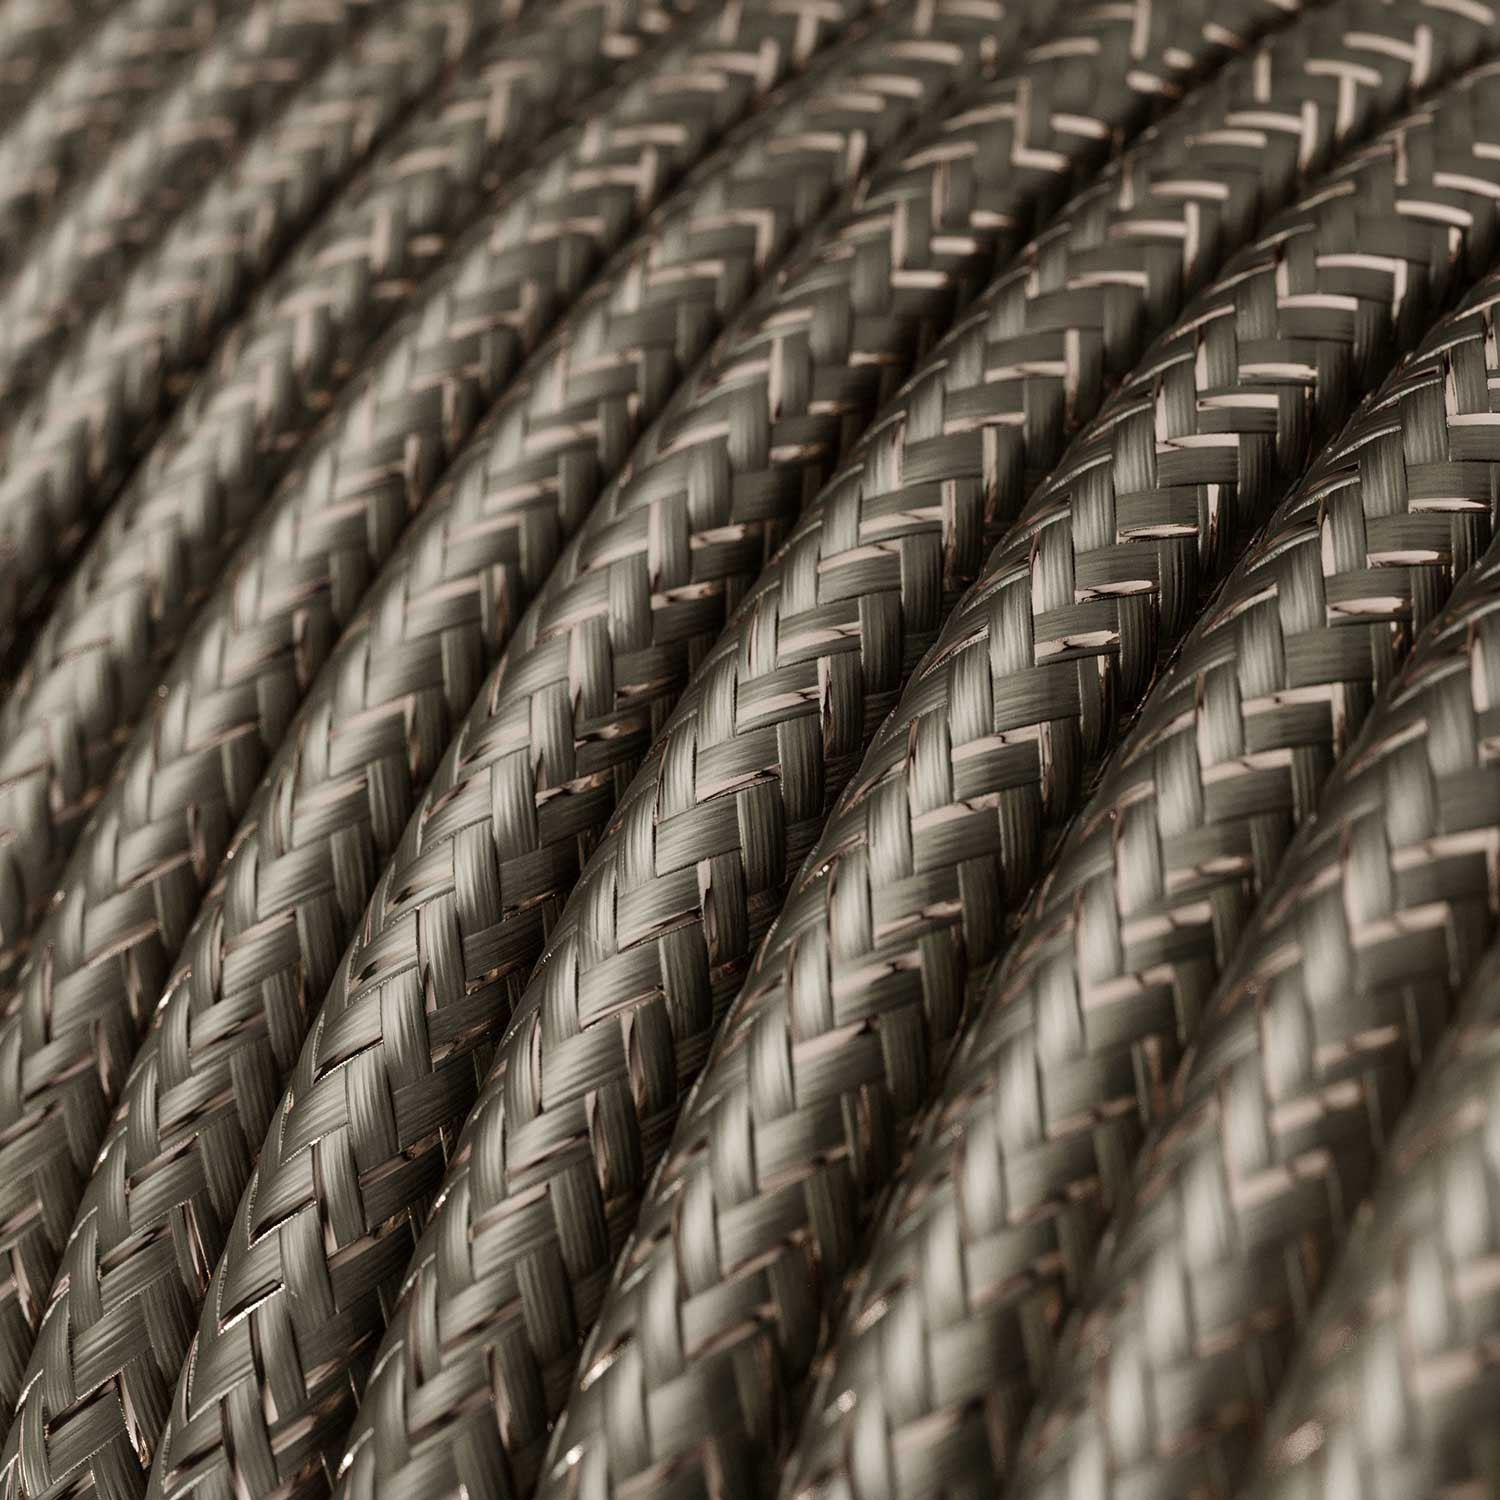 Elektrisches Kabel rund überzogen mit Textil-Seideneffekt Einfarbig Grau geglittert RL03